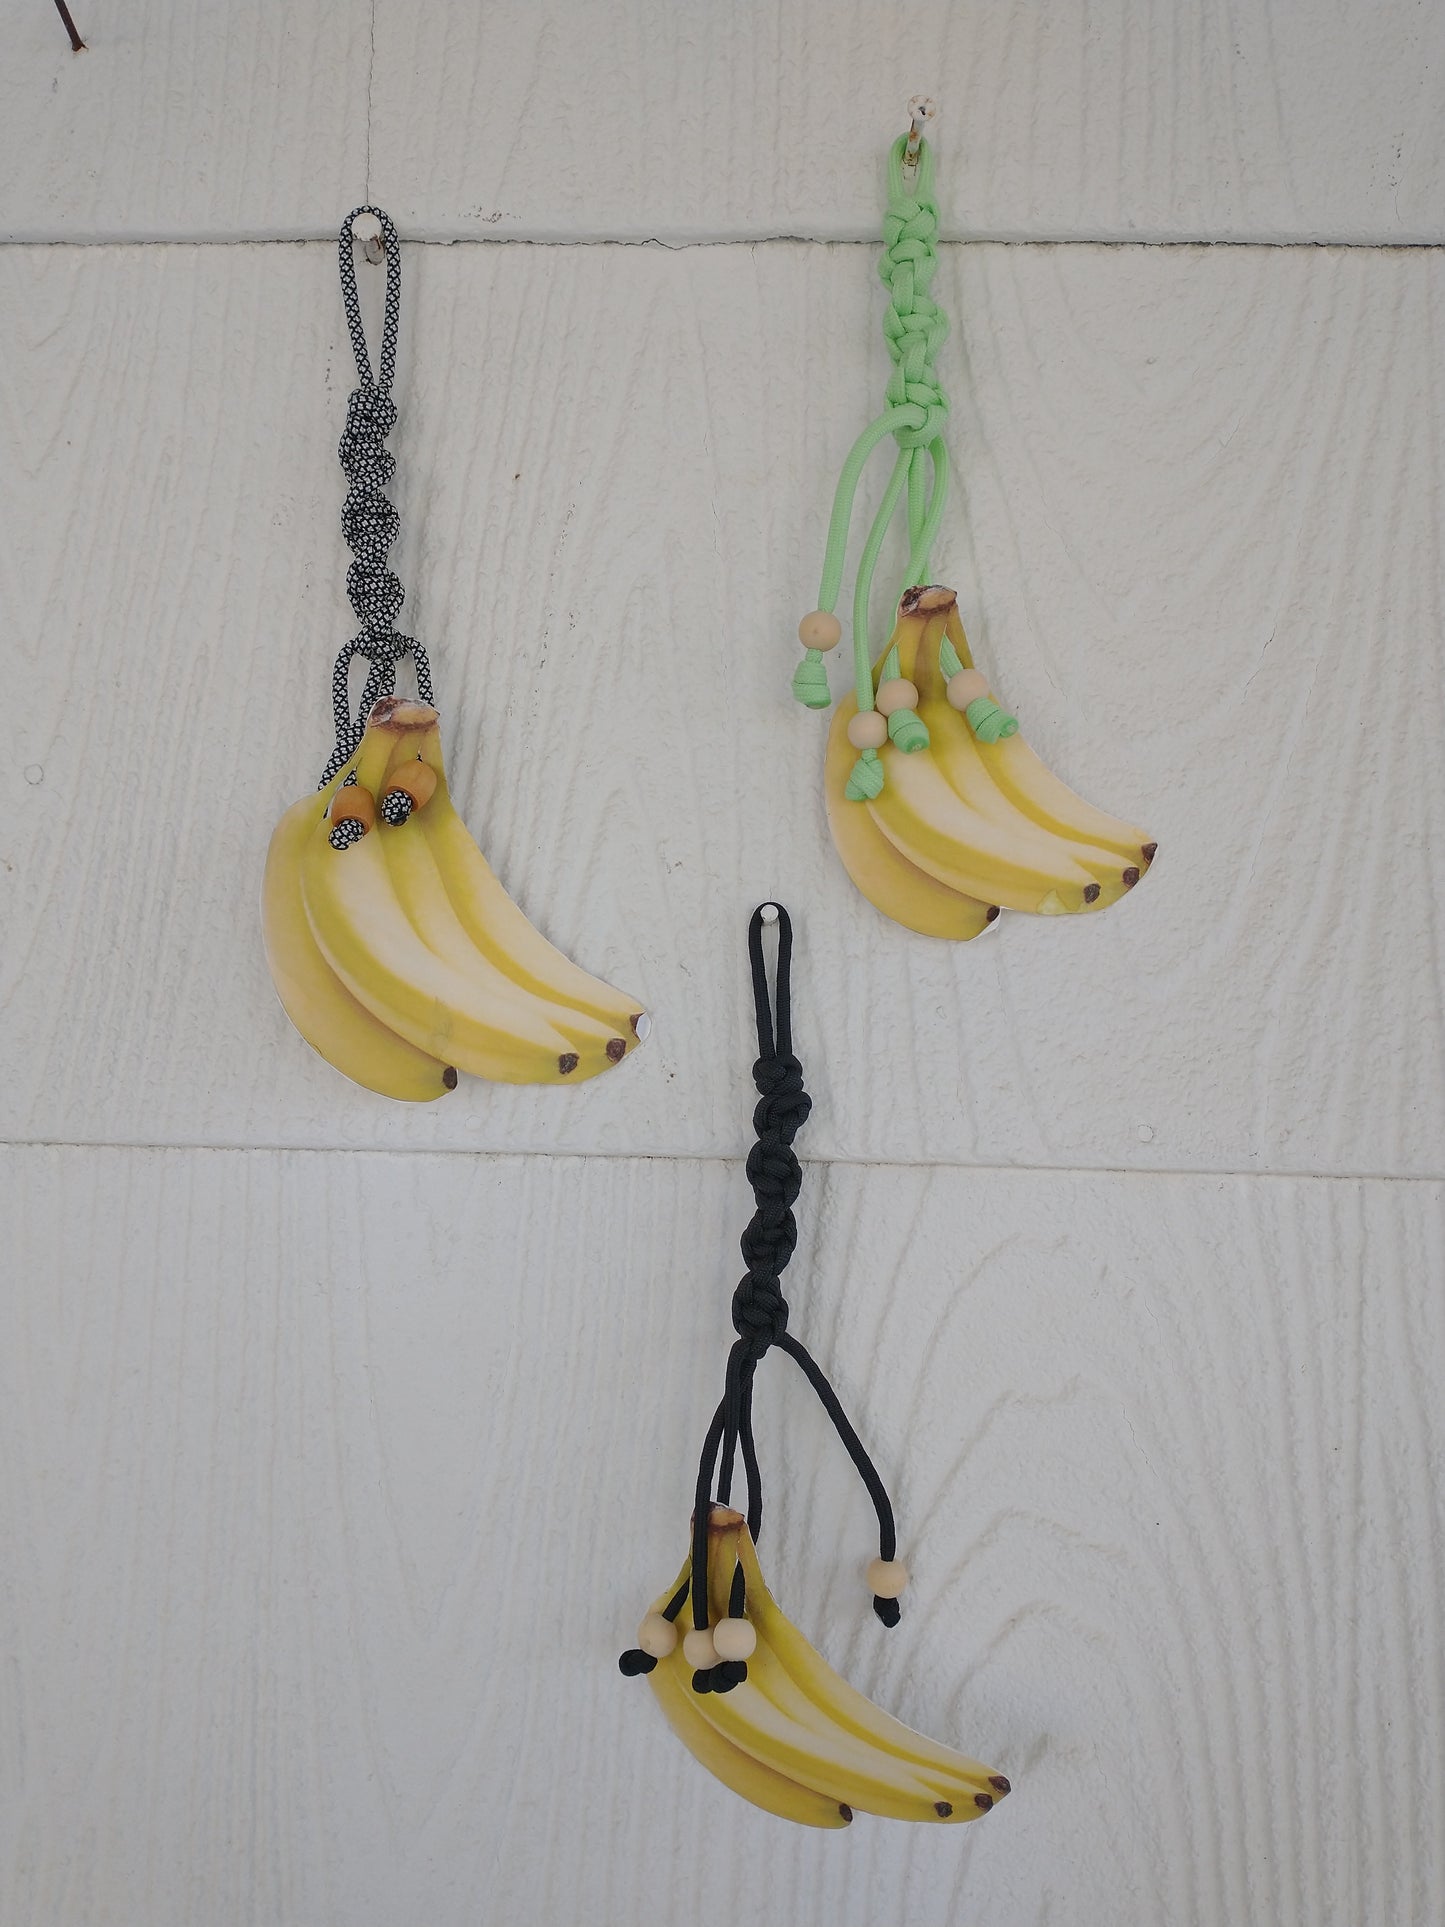 Banana holder